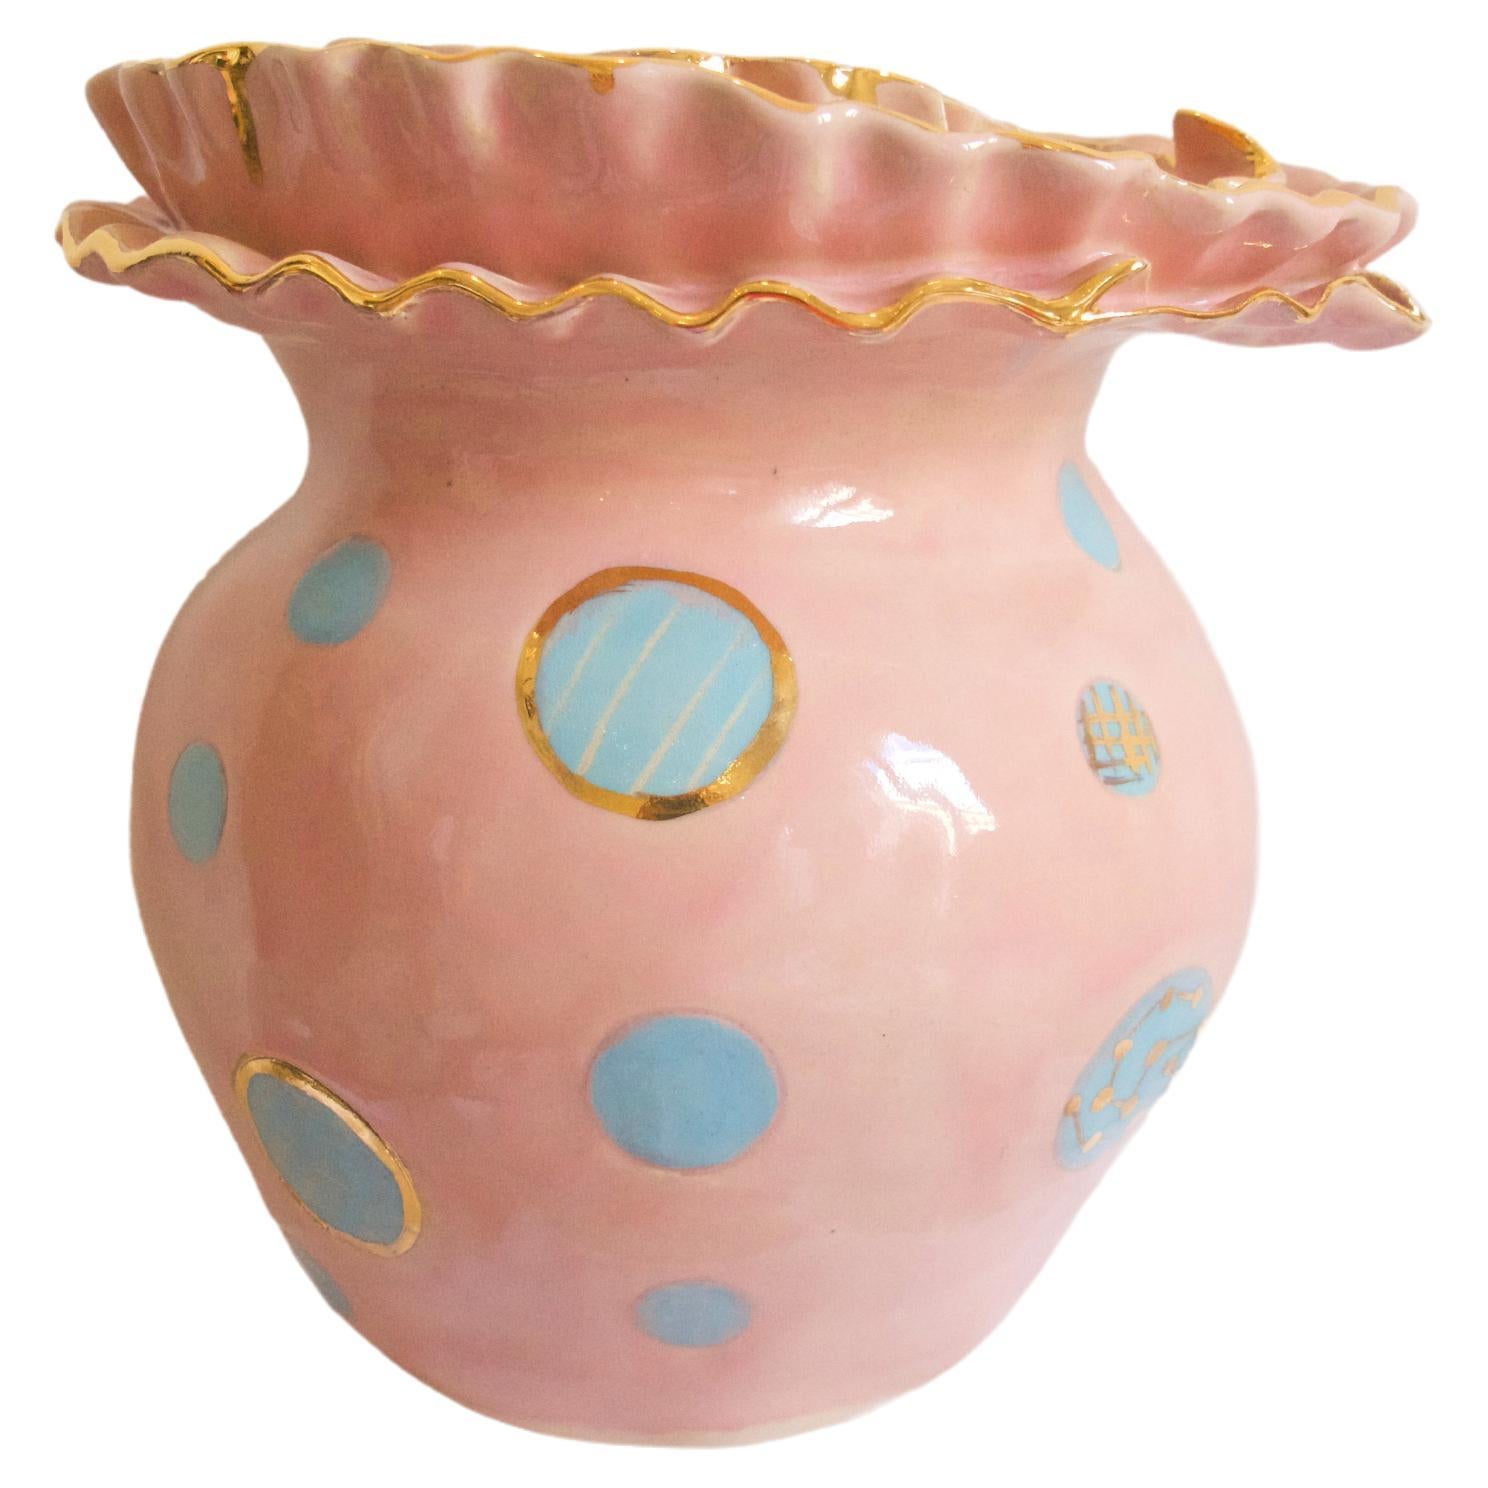 OLÉ Vase Nr. 1 von der Künstlerin und Designerin Hania Jneid